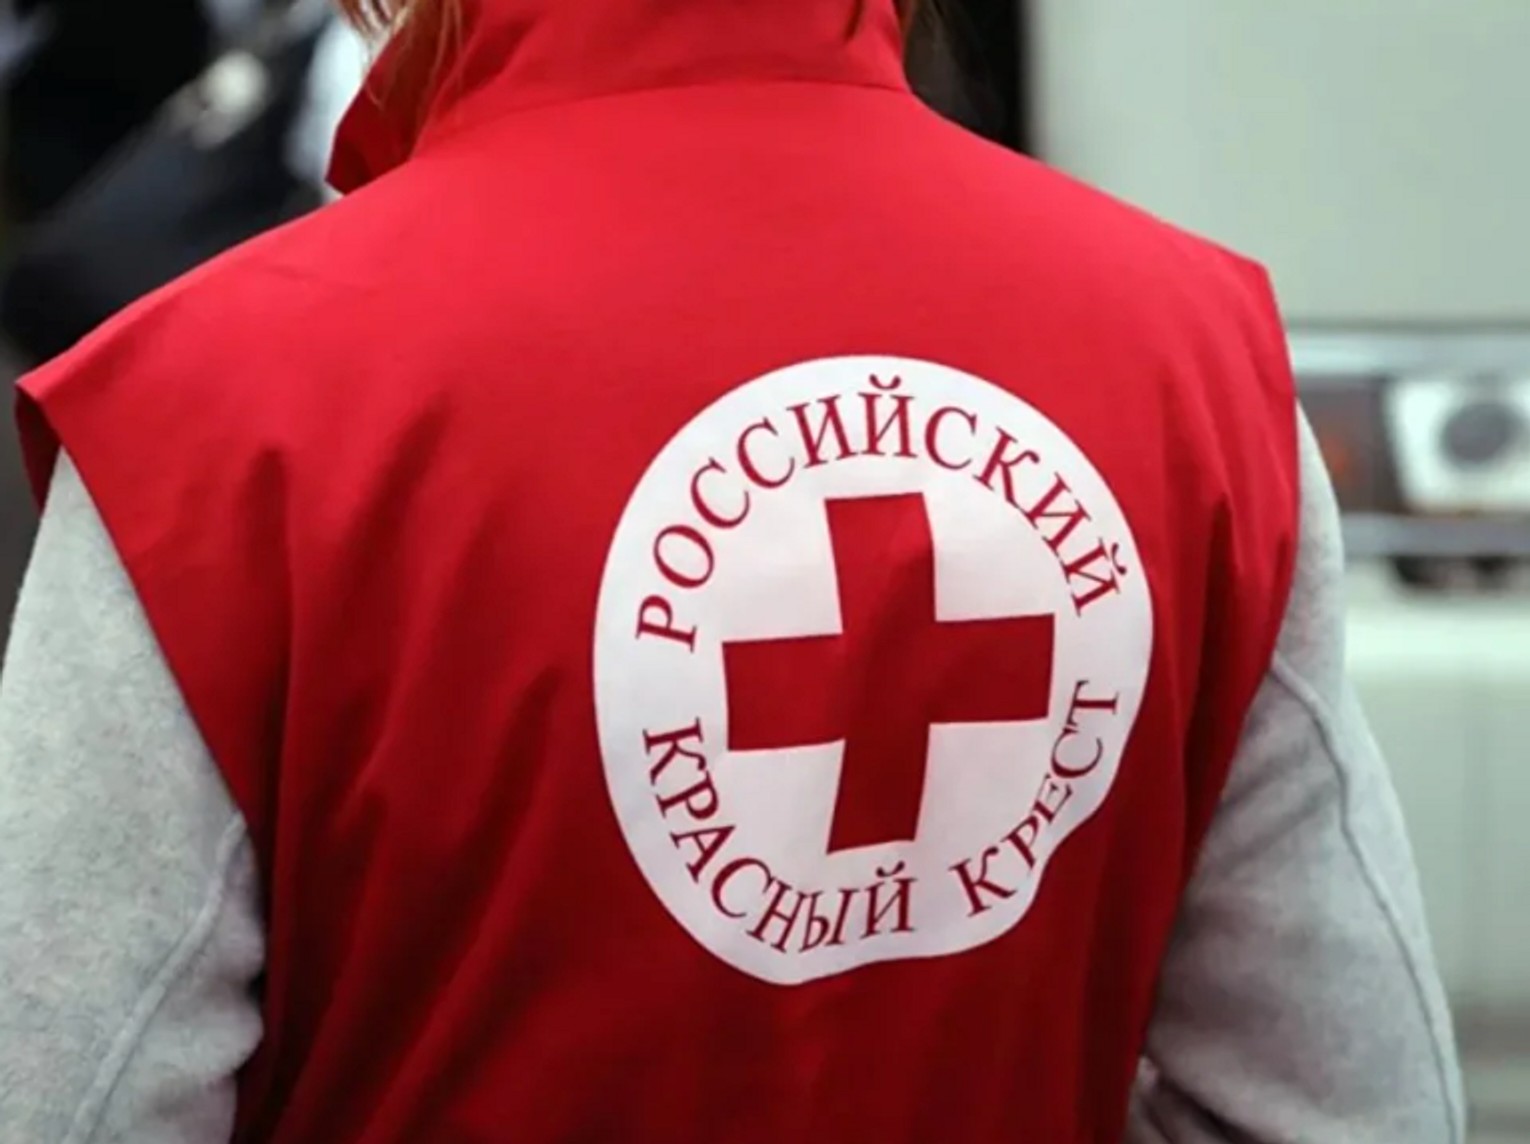 Российский Красный Крест, который должен быть независимым, пропагандирует войну даже среди беженцев — «Верстка»